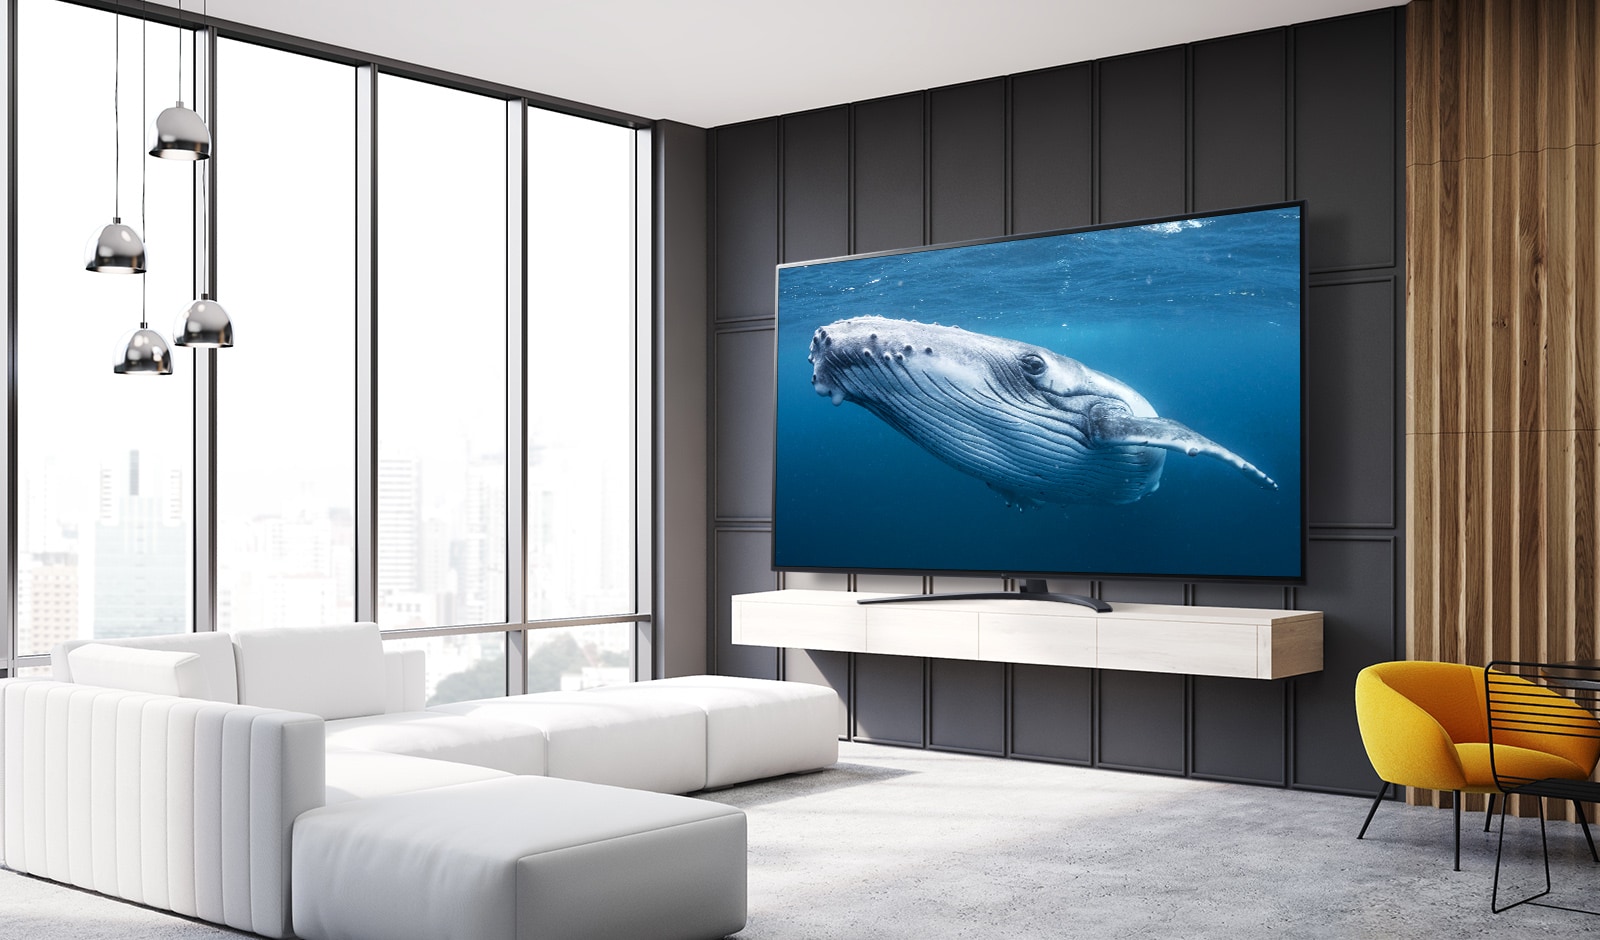 في غرفة المعيشة ، يوجد تلفزيون بشاشة كبيرة يعرض صورة لحوت كبير في البحر.